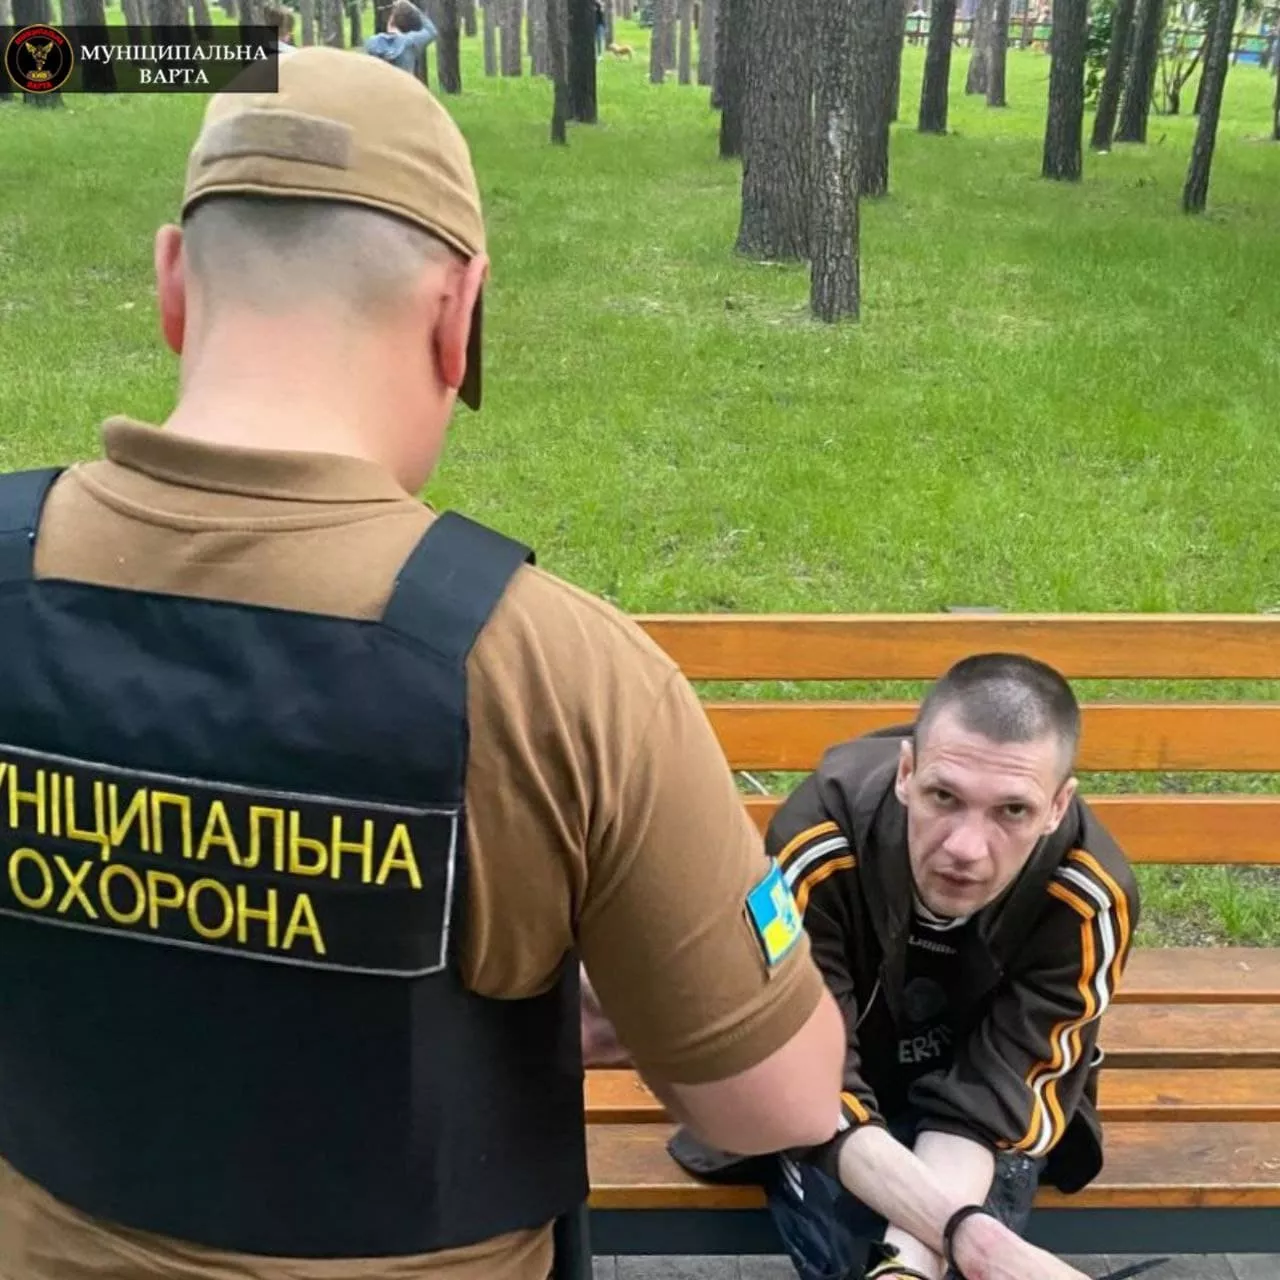 Фото: Муниципальная стража Киева